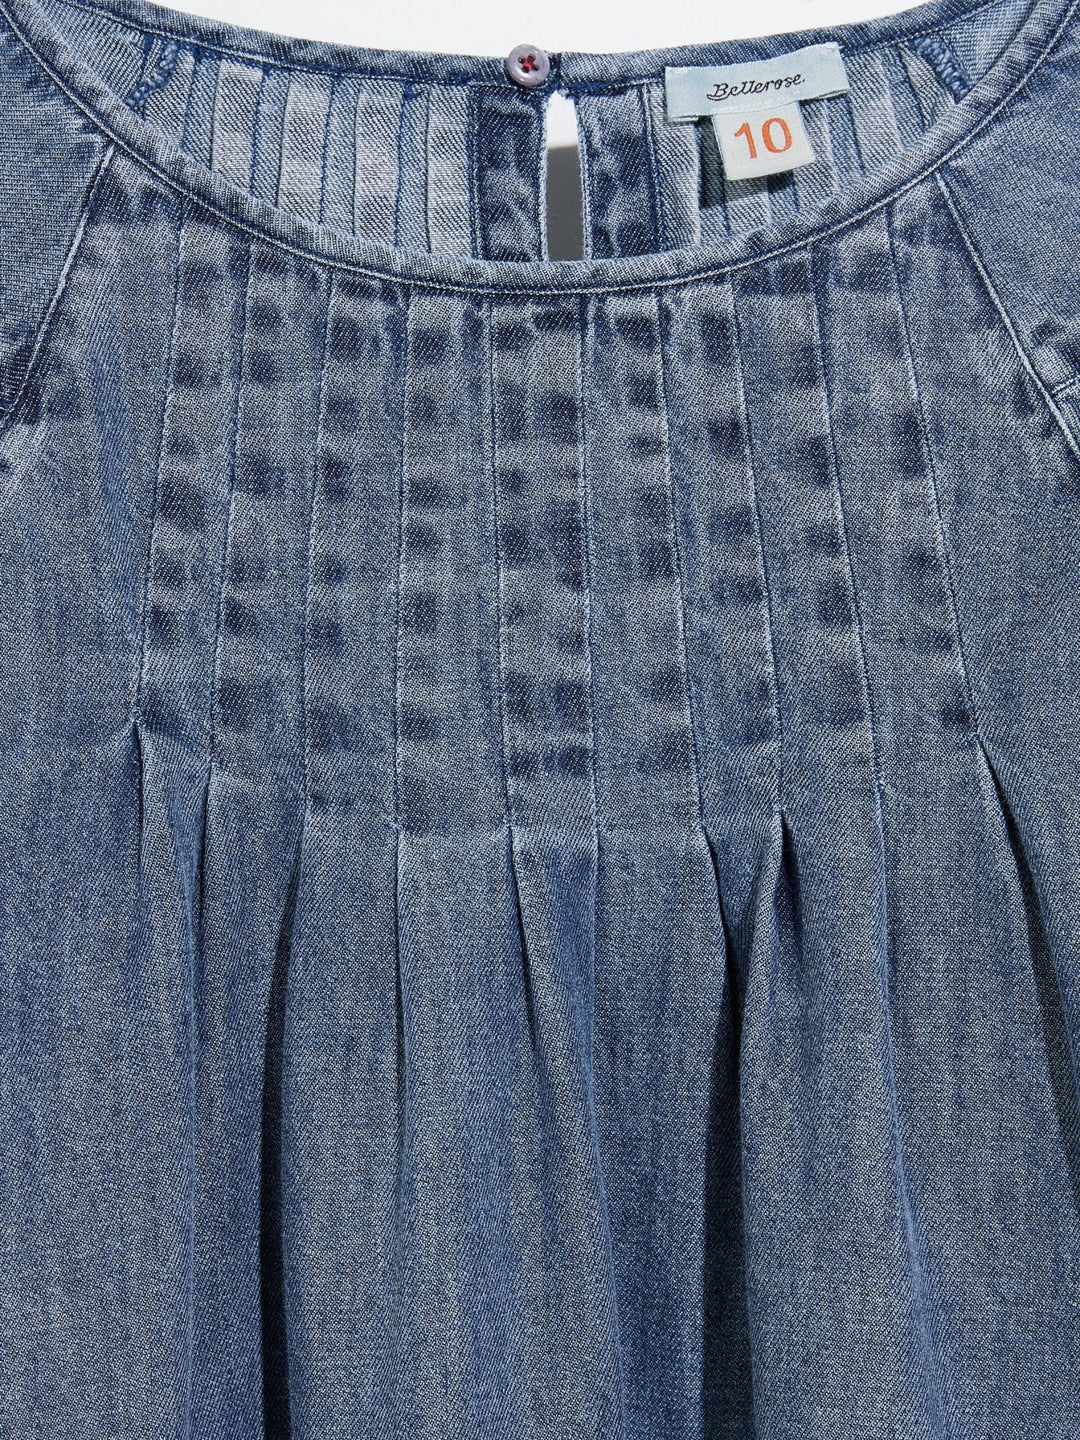 Pokon Dress - LT Blue Bleach - Posh New York